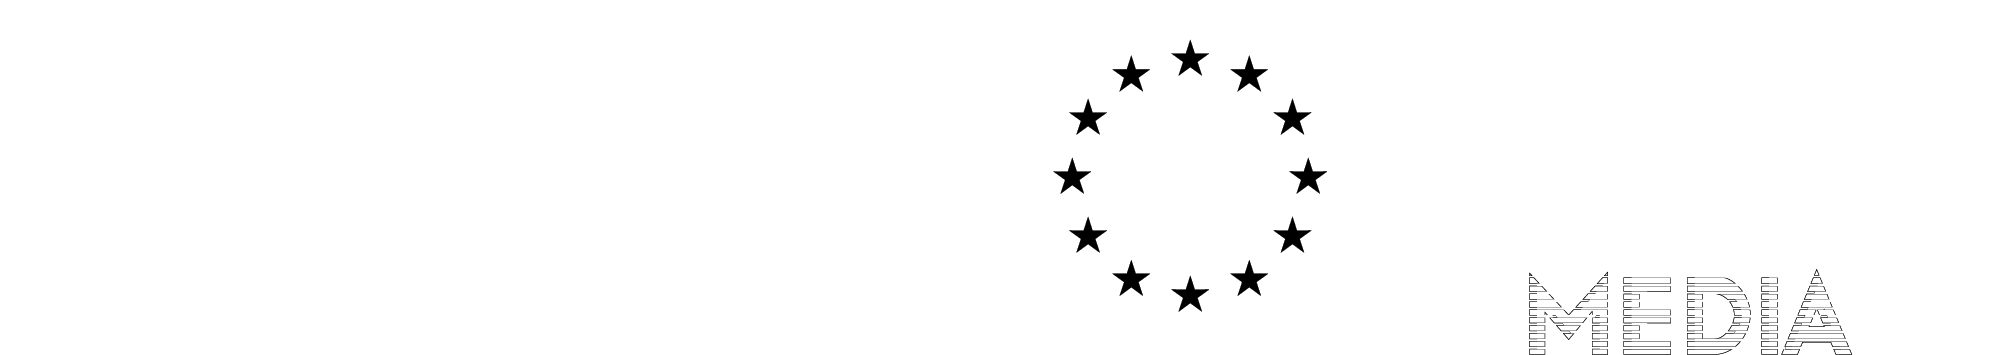 Emblema europeo incluyendo la declaración de financiación